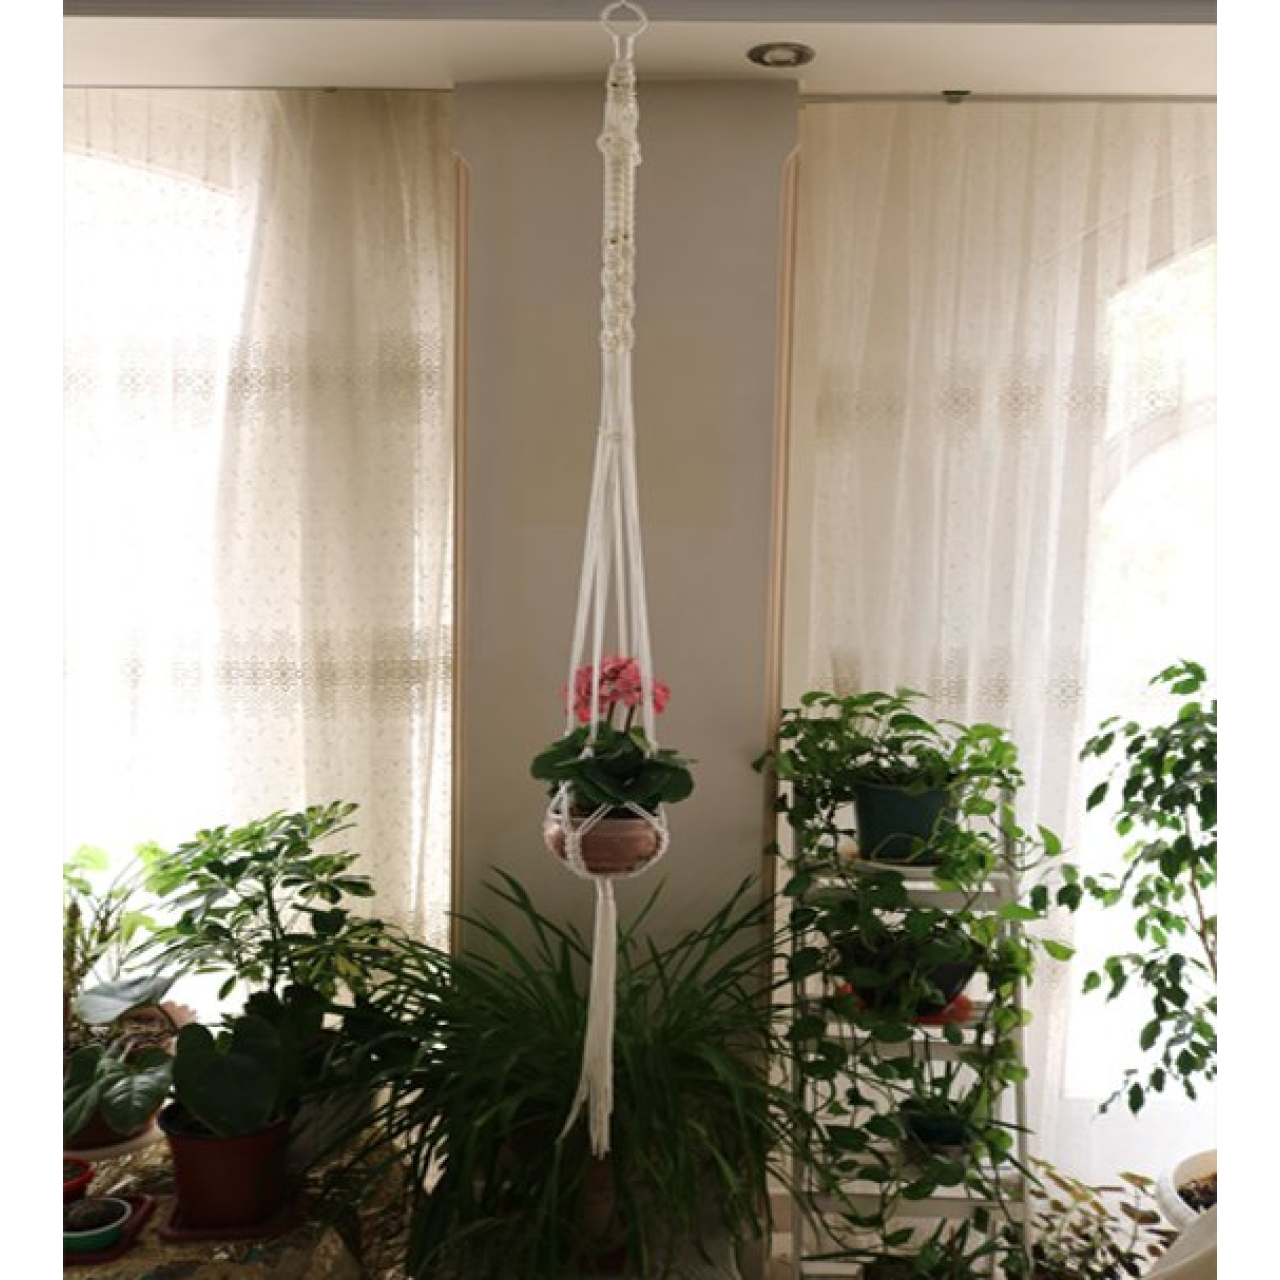 آویز گلدان مکرومه یک طبقه بدون حلقه